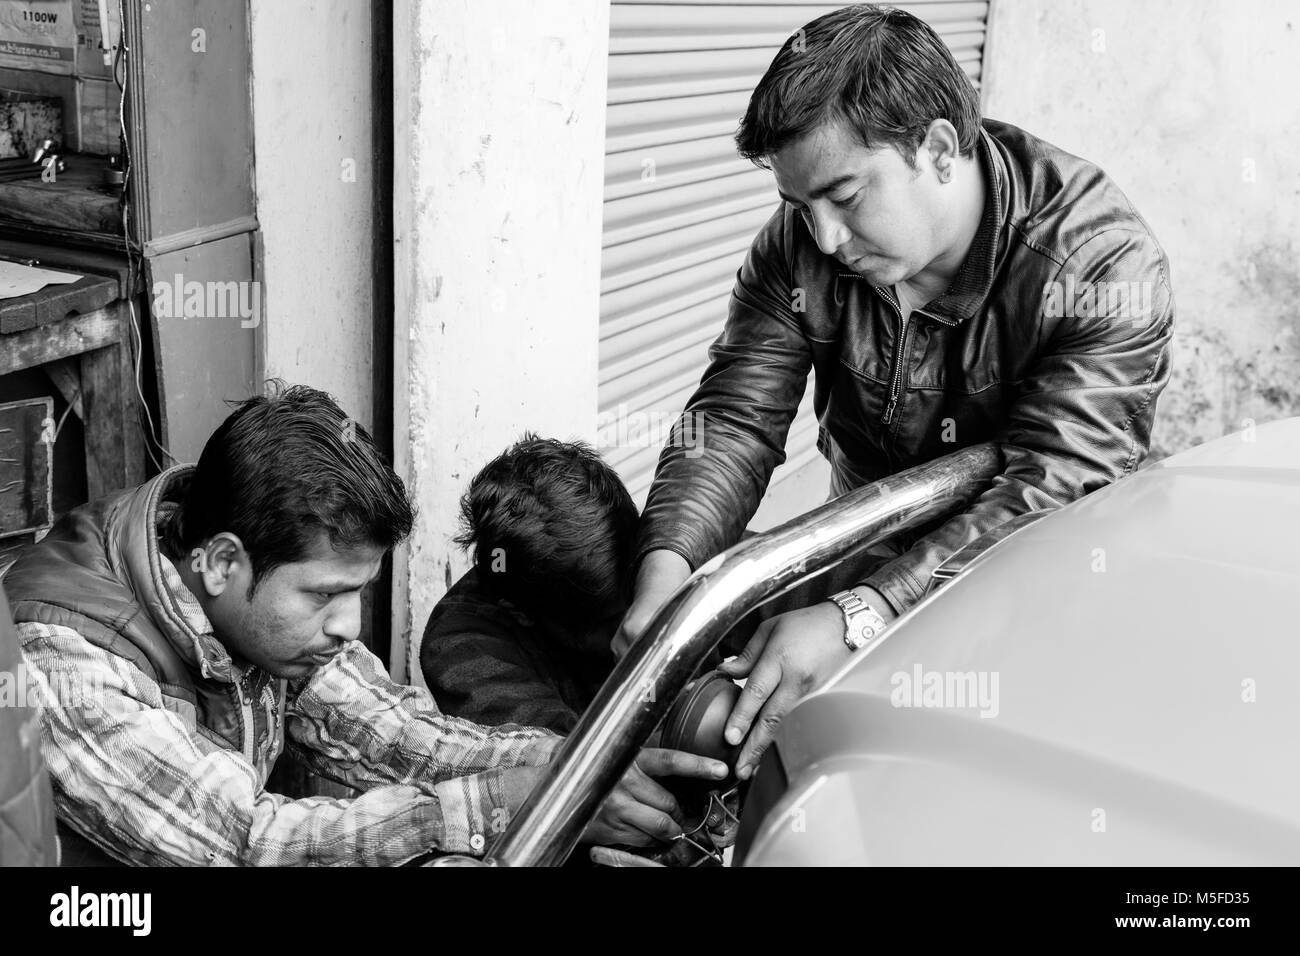 Gangtok, India, il 8 marzo 2017: Riparazione dei fari su una vettura in Gangtok Foto Stock